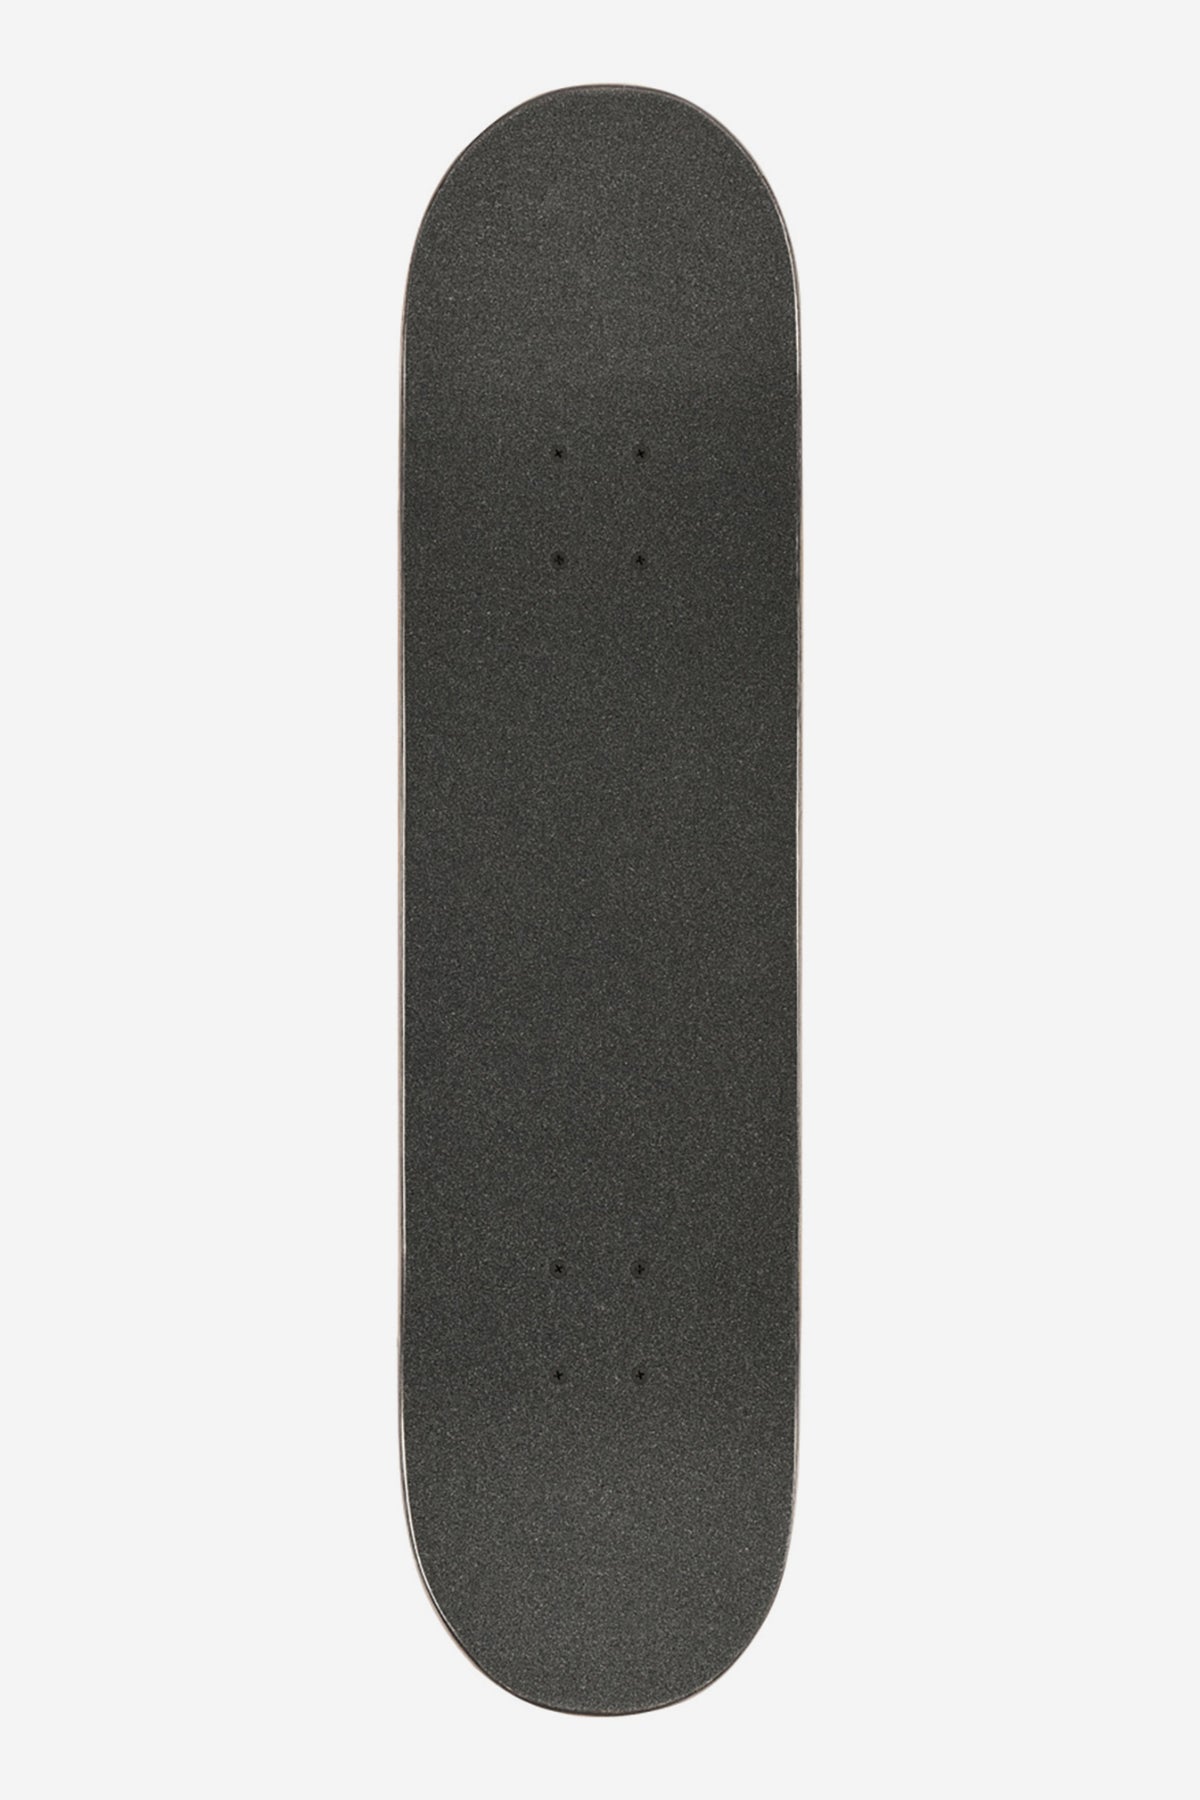 Globe - Goodstock - Sahara- 8.375" Completo Skateboard